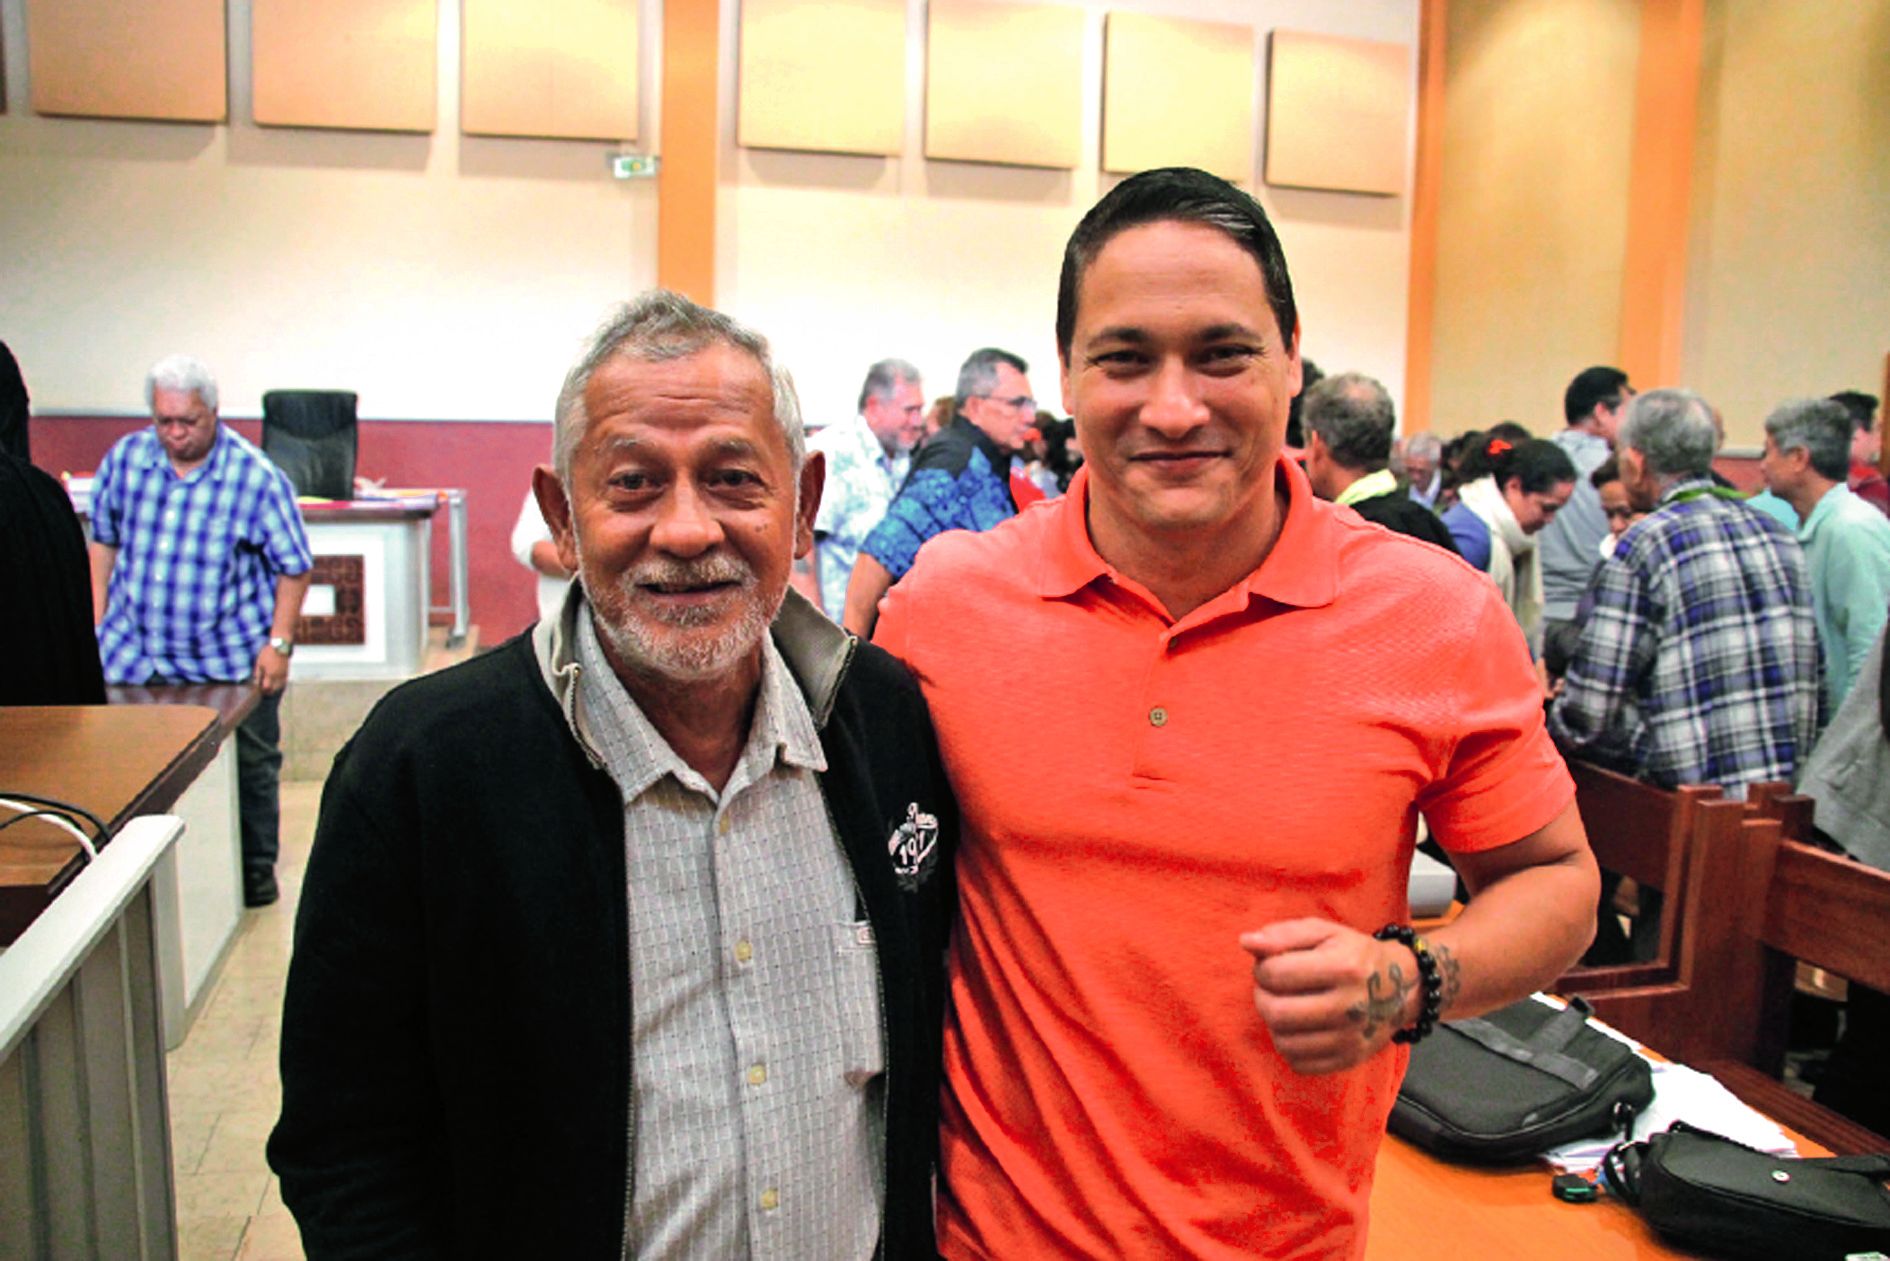 Vito Maamaatuaiahutapu et Heinui Le Caill, les deux autres prévenus aux côtés d’Oscar Temaru dans le procès radio Tefana. Photo Florent Collet